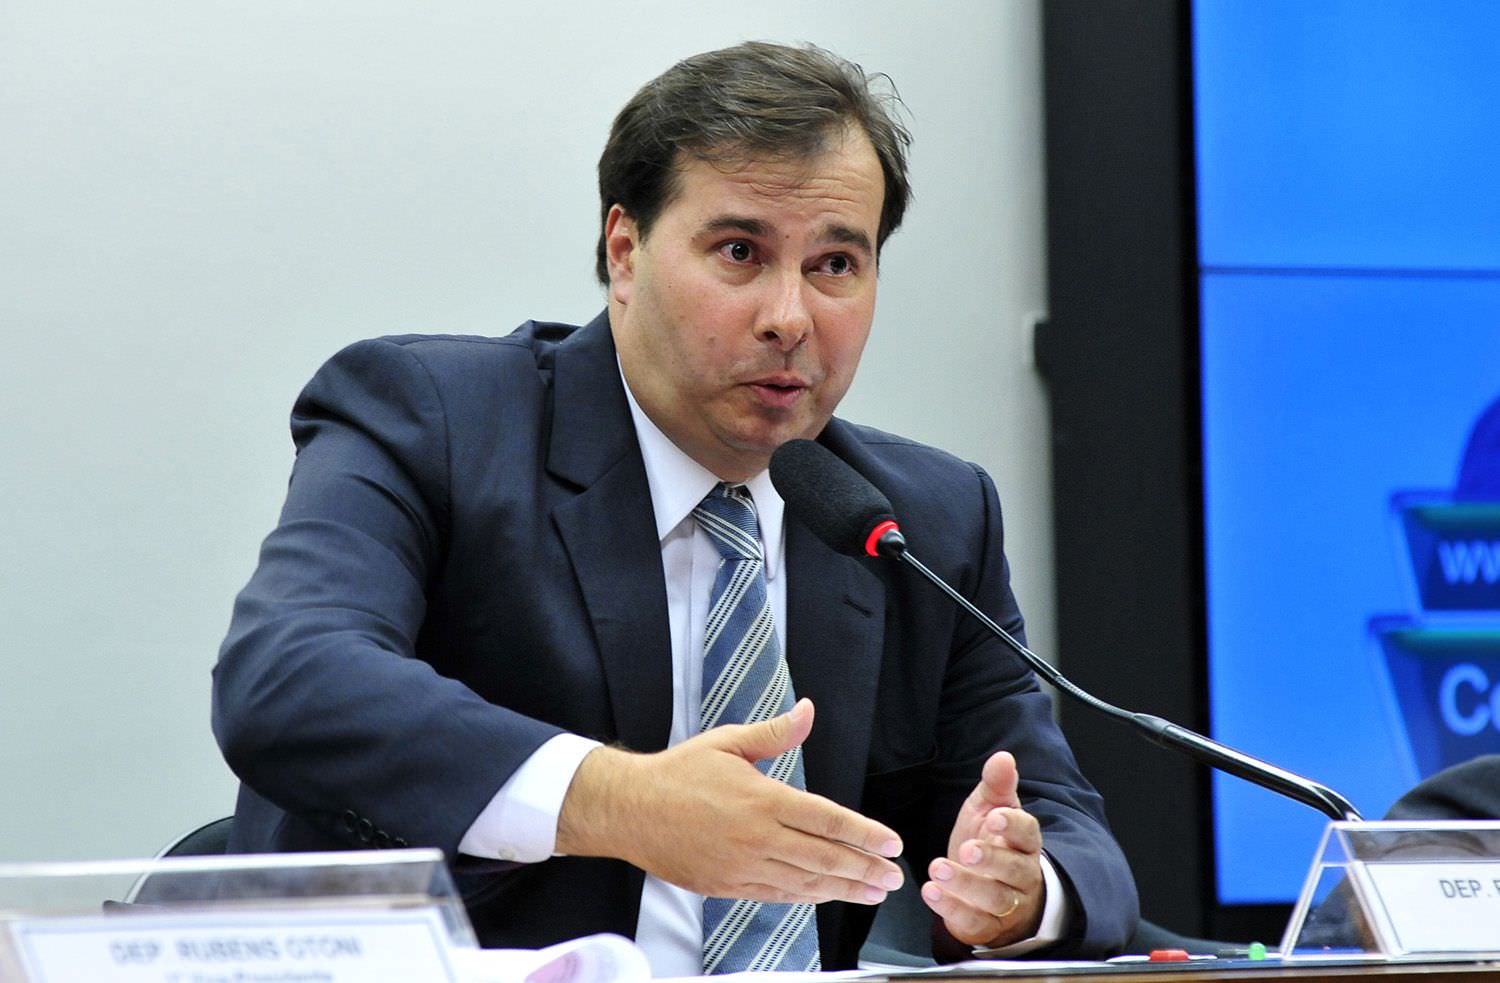 Rodrigo Maia assume interinamente a Presidência da República